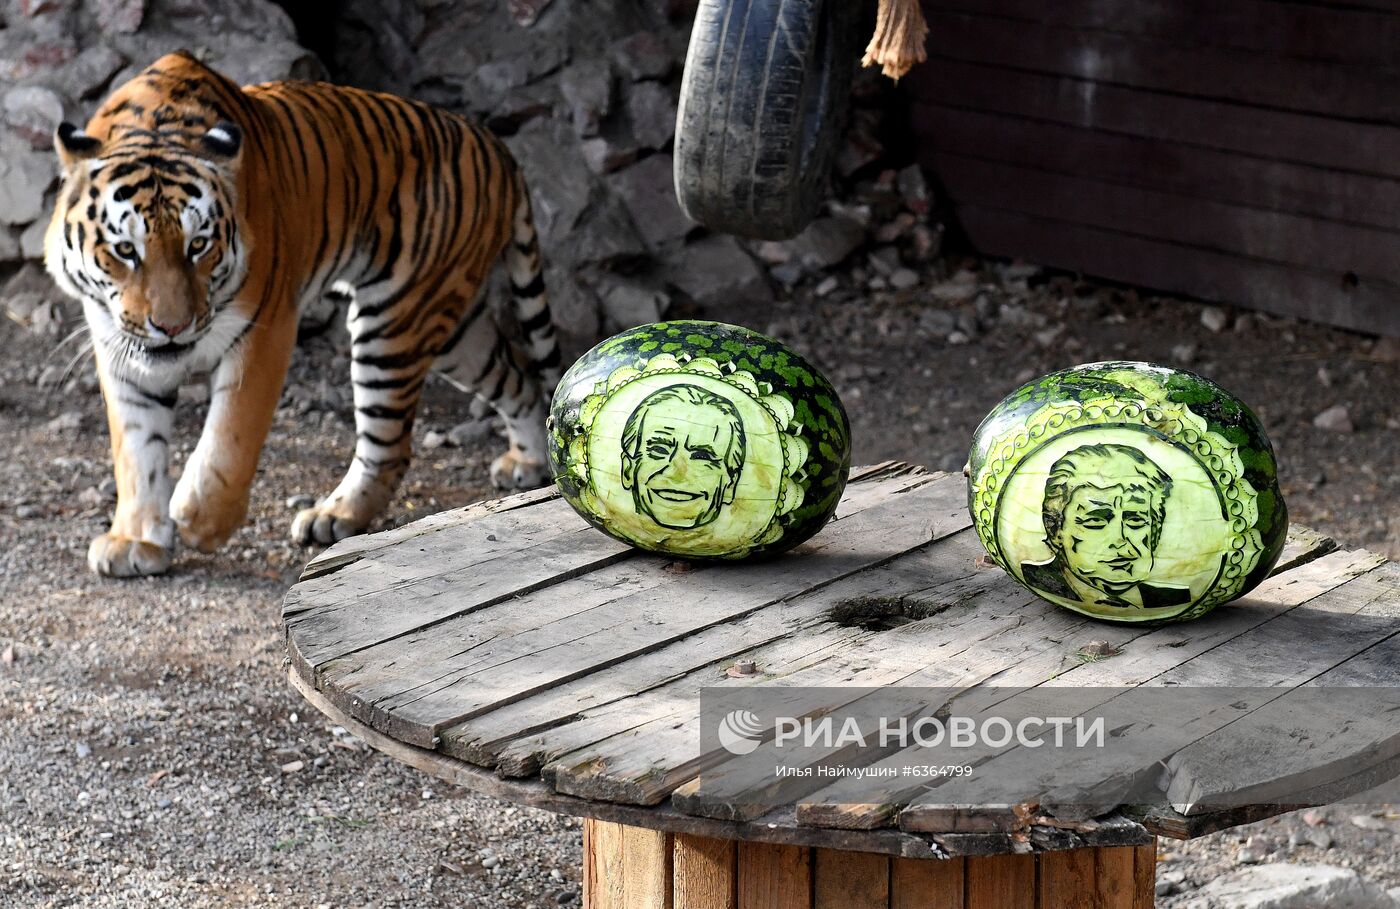 Питомцы красноярского зоопарка "Роев ручей" предсказали результаты выборов в США